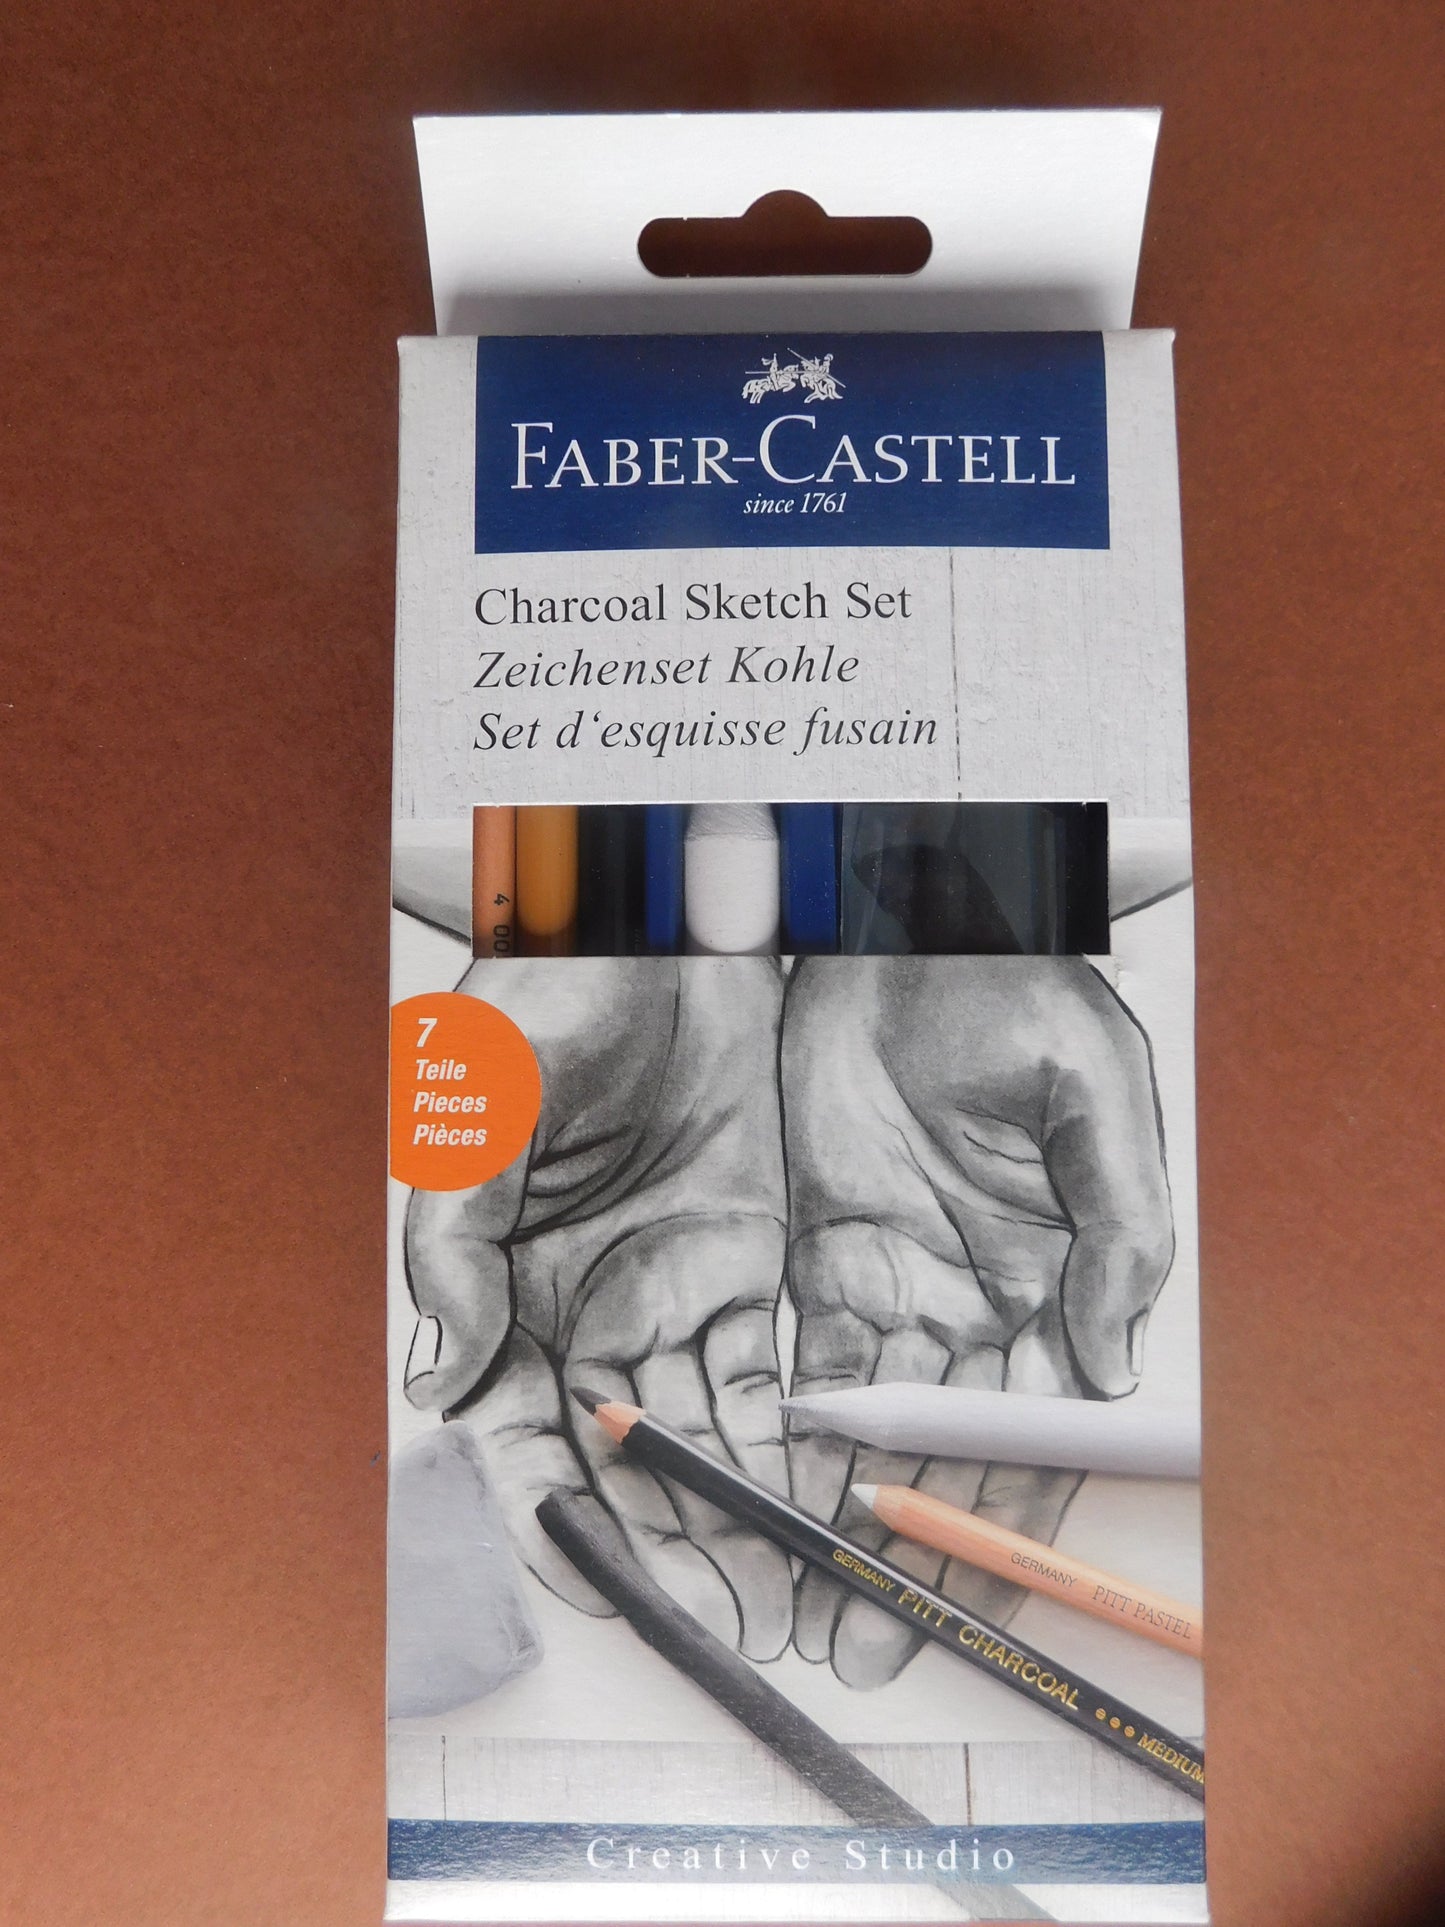 Faber- Castell Pitt Charcoal Set